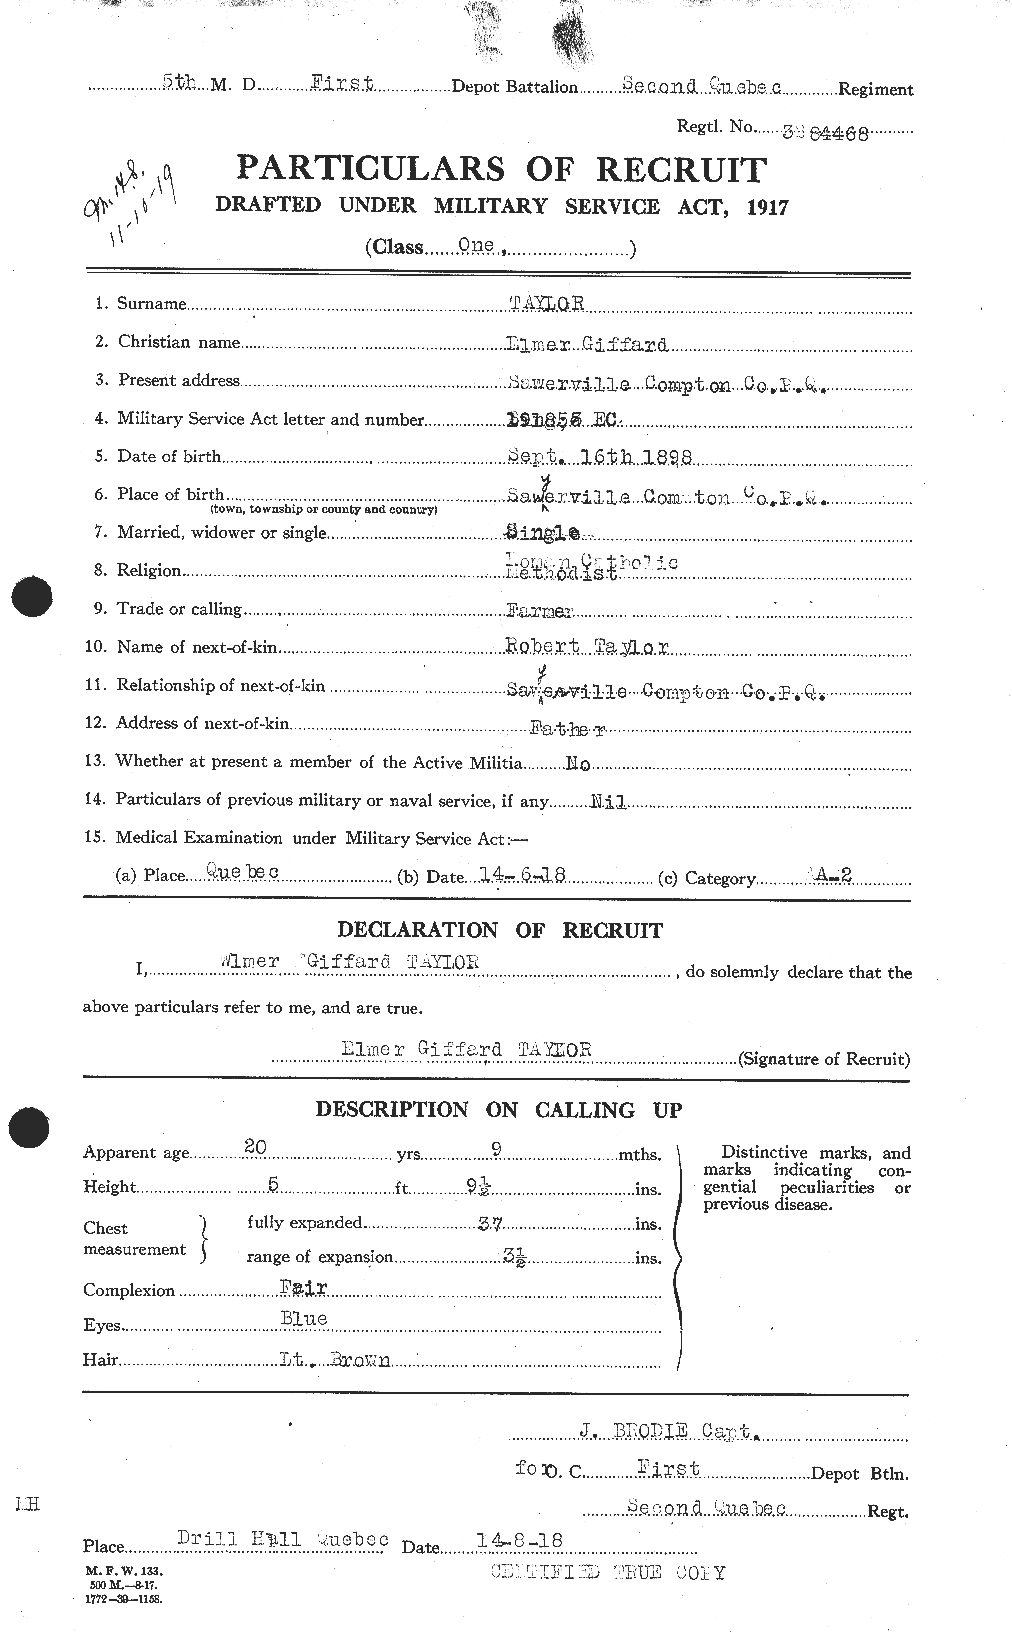 Dossiers du Personnel de la Première Guerre mondiale - CEC 627353a